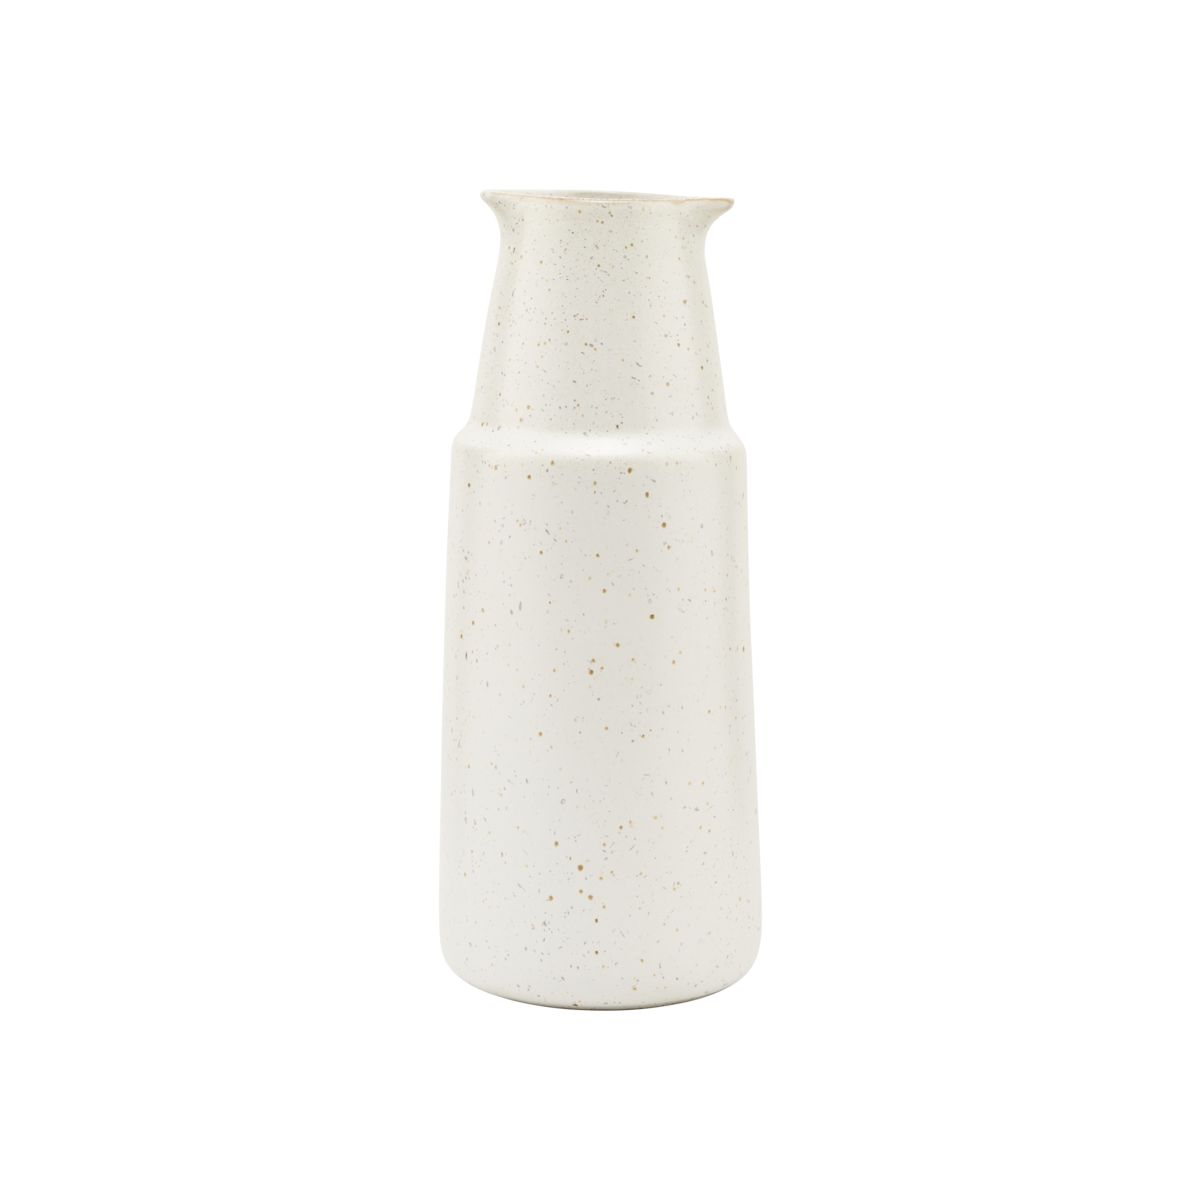 Pion - White stoneware bottle